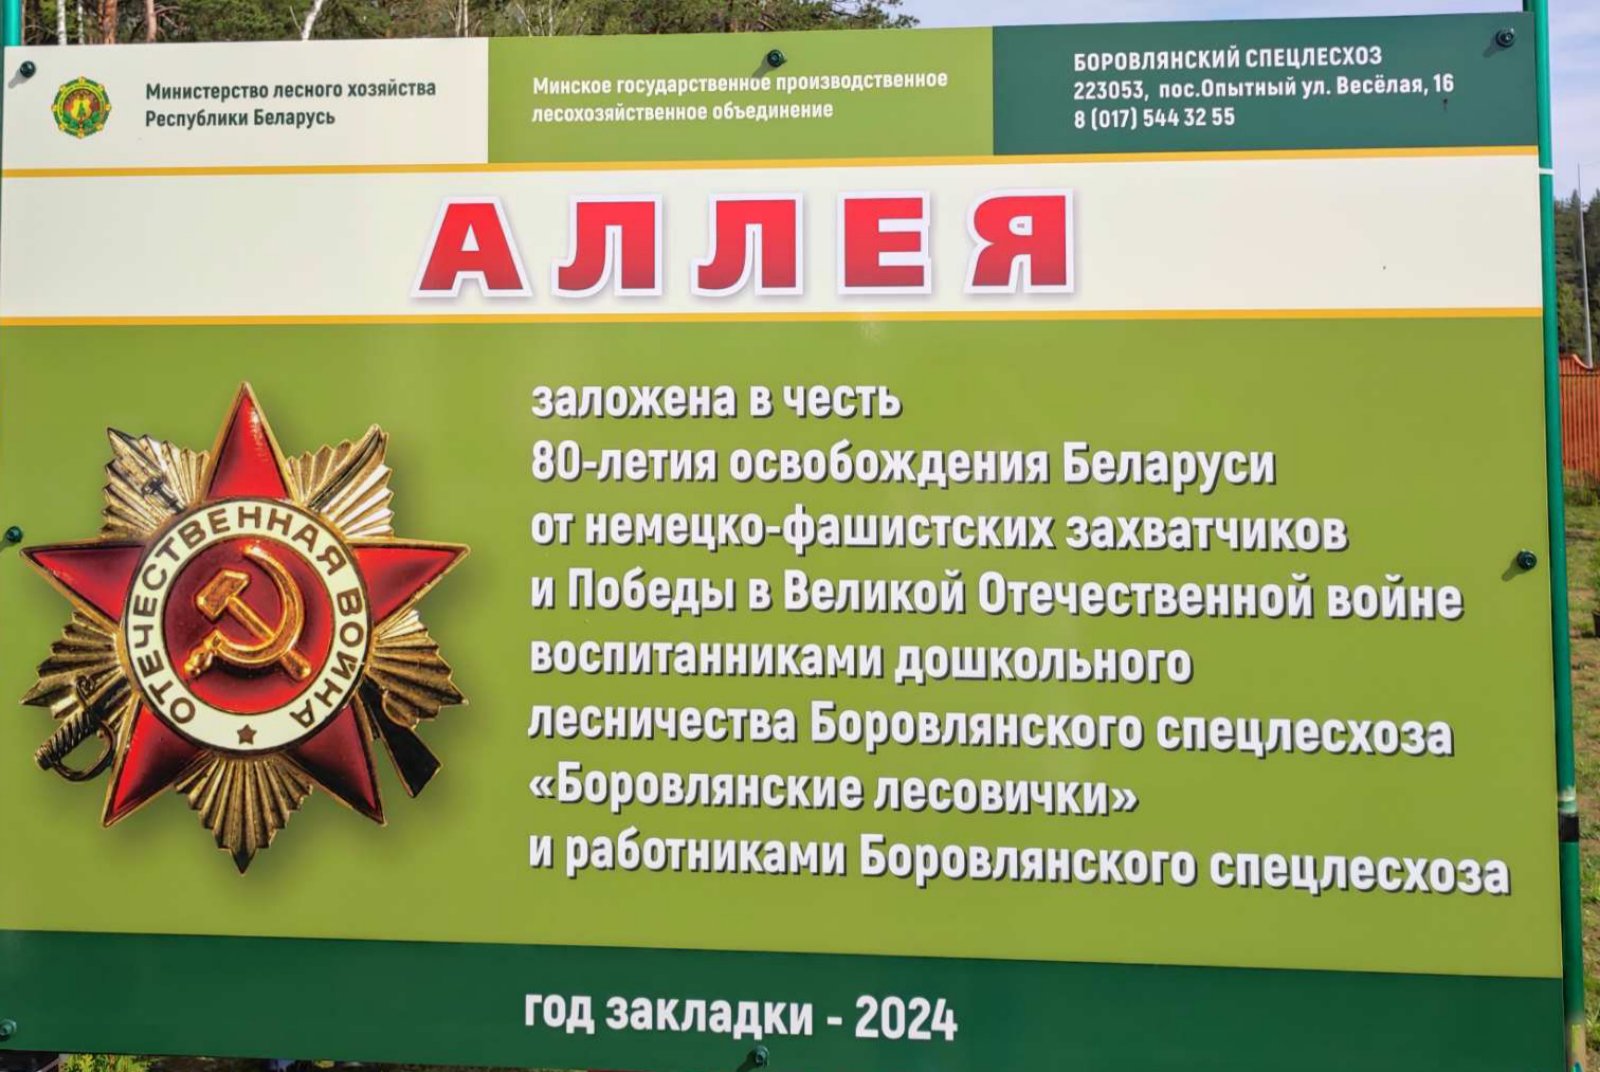 Закладкаа аллеи в честь 80-летия освобождения Беларуси от немецко-фашистских захватчиков